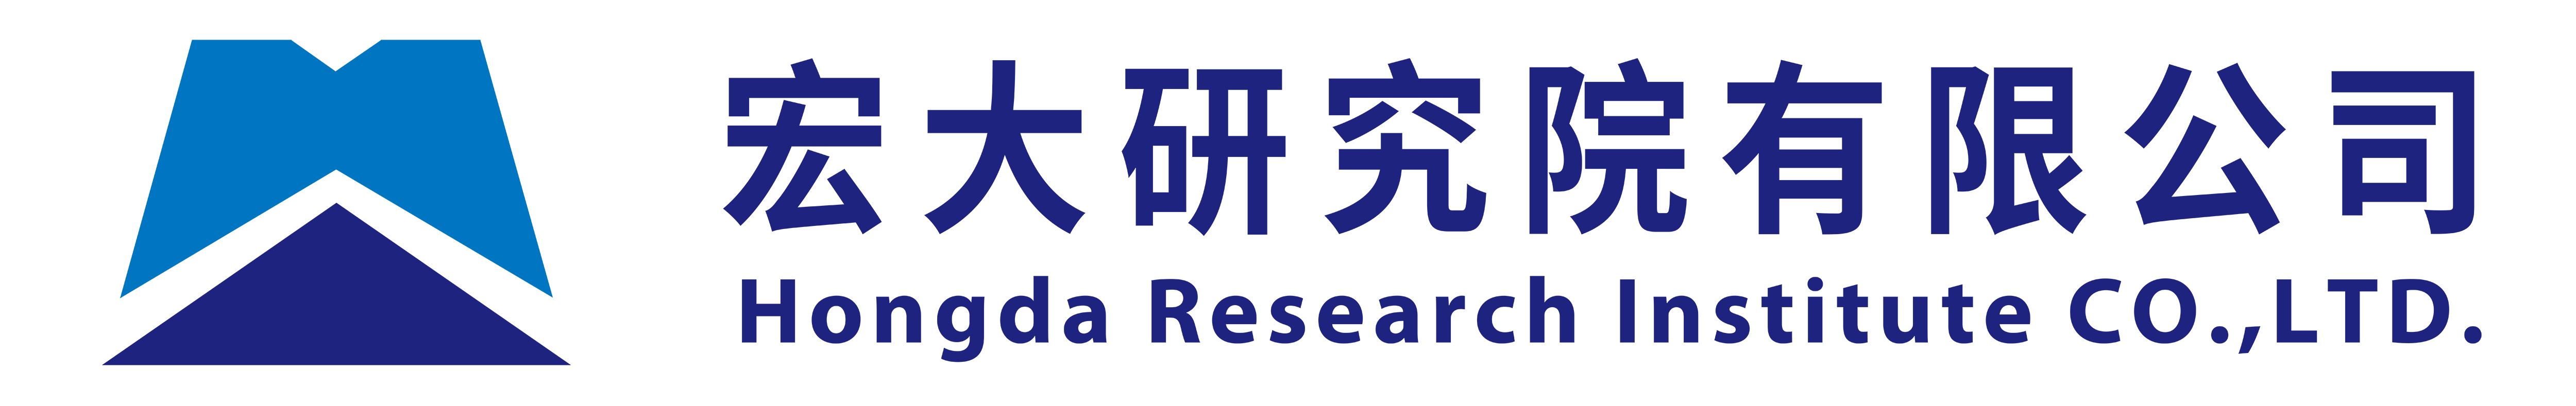 1 宏大企业logo.png